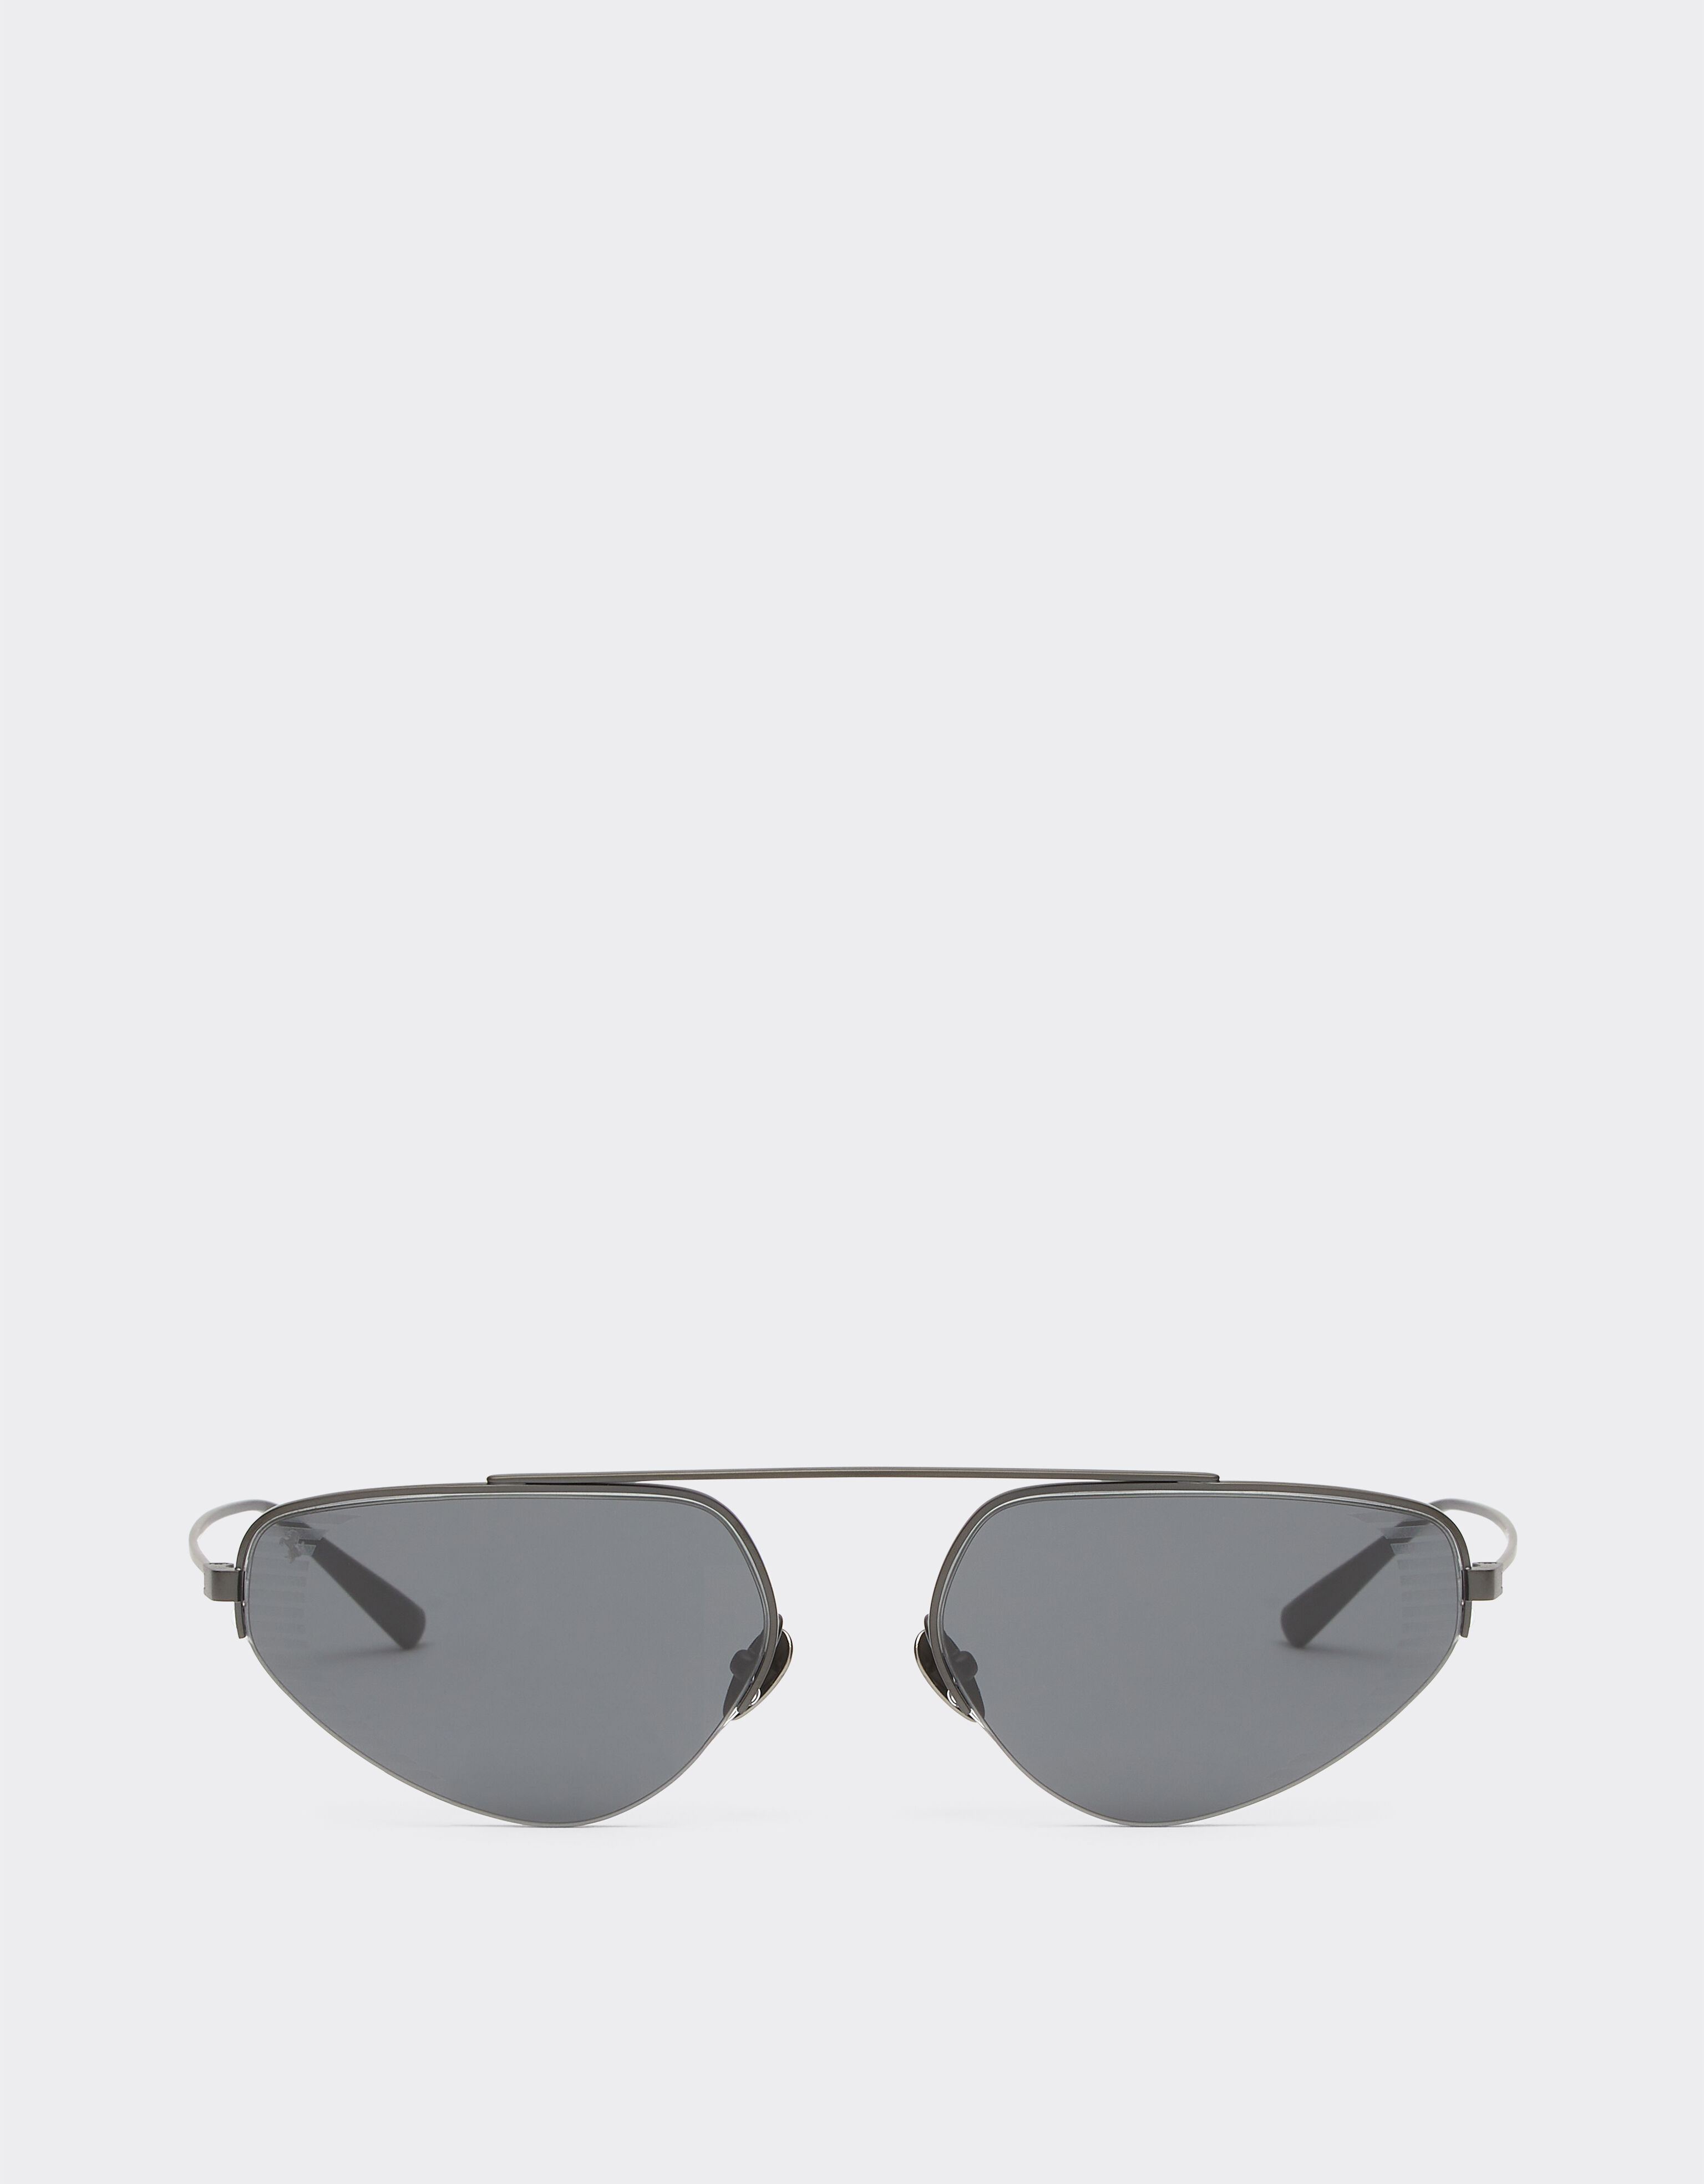 Ferrari Gafas de sol Ferrari de titanio negro con lentes grises Negro mate F1275f